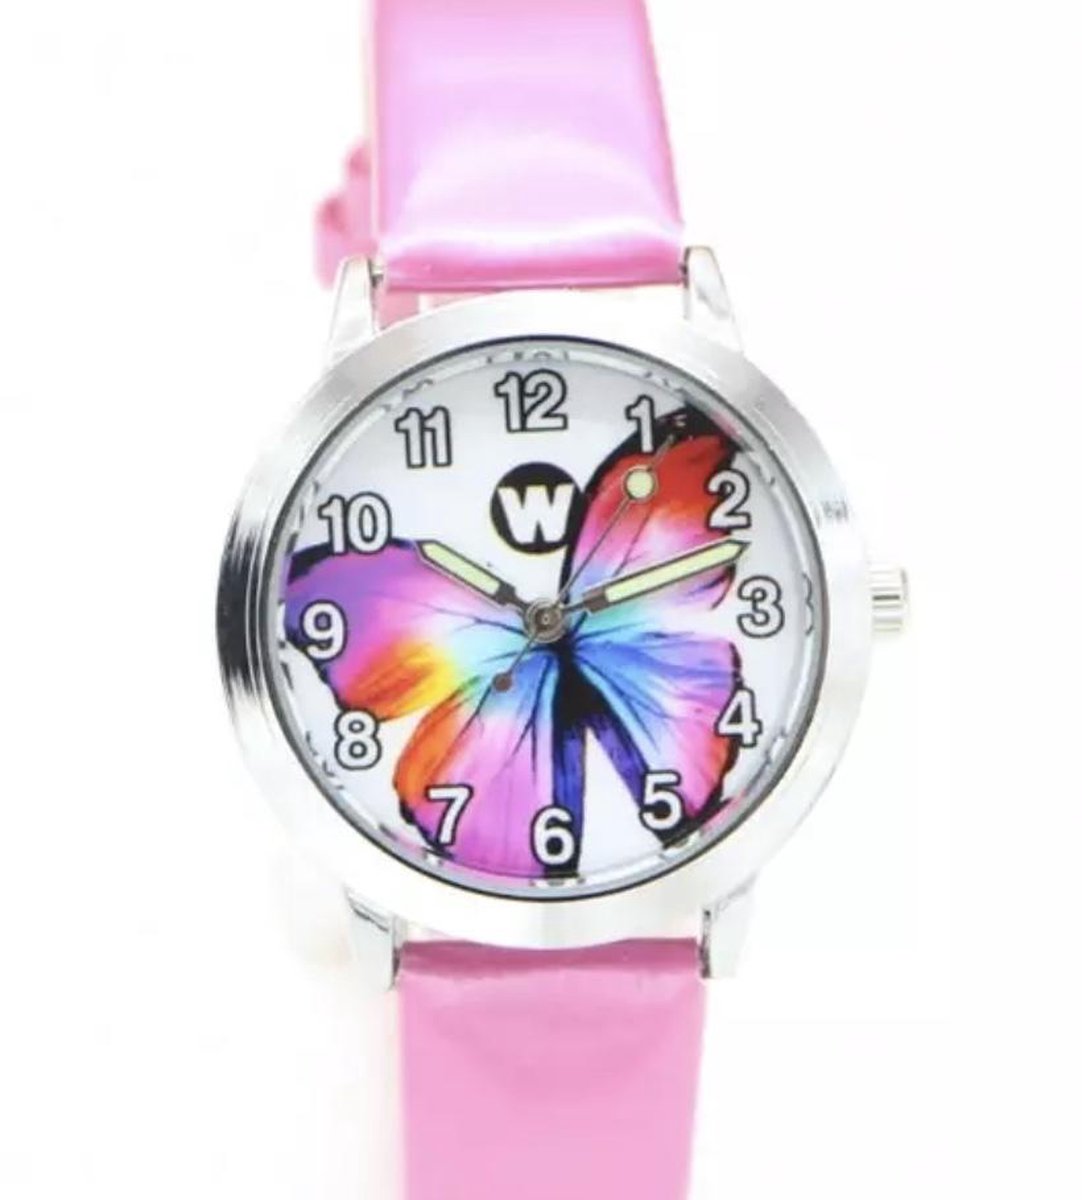 Meisjes horloge roze met Vlinder afbeelding en leer bandje